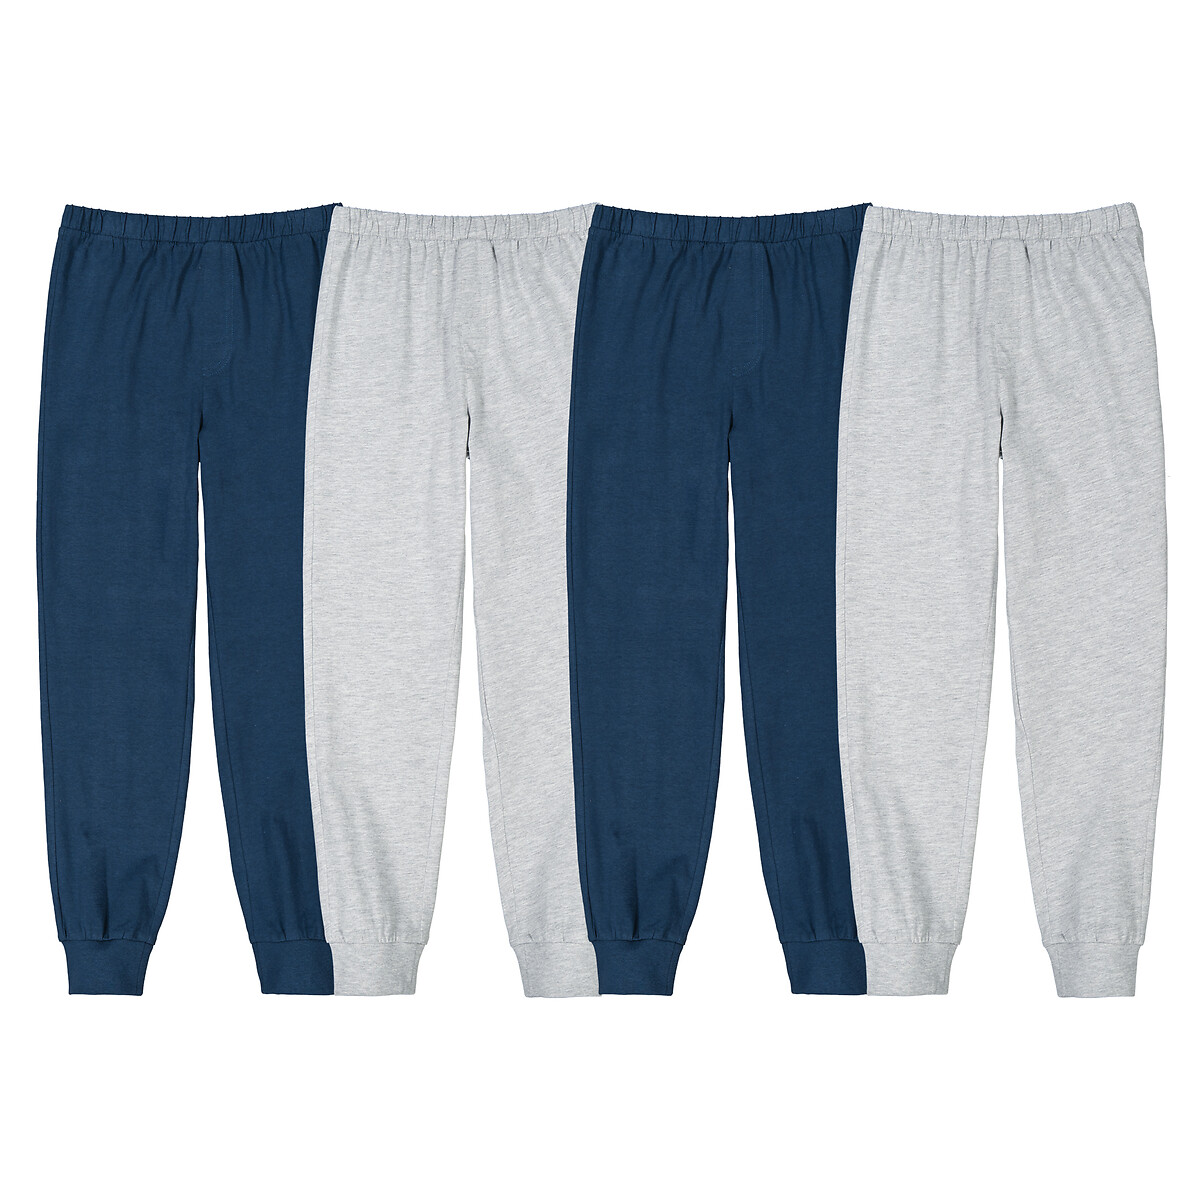 Комплект из четырех брюк пижамных из джерси 4 года - 102 см синий комплект из трех пижамных брюк la redoute 3 года 94 см синий